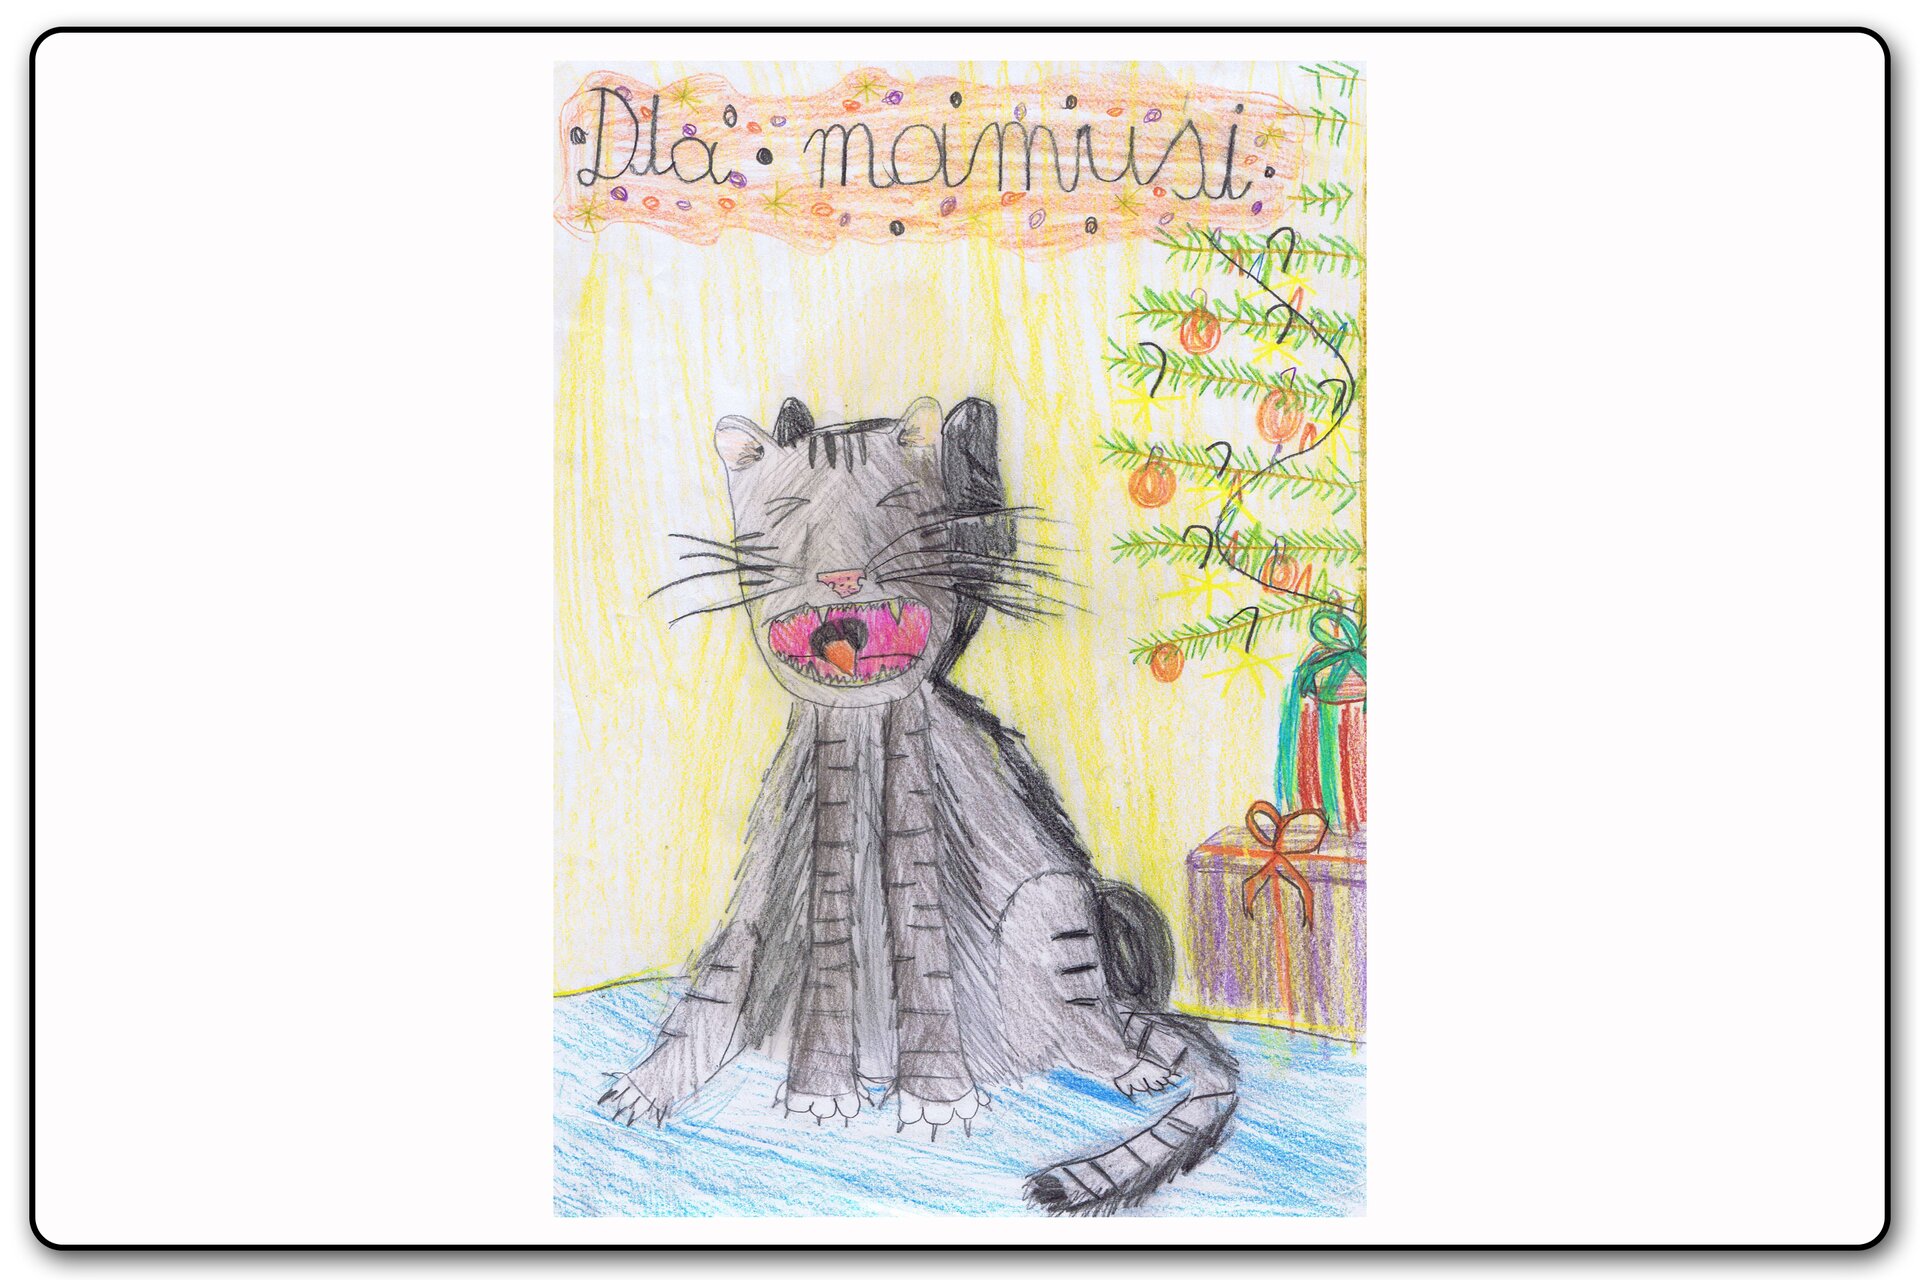 Ilustracja 10 galerii prac plastycznych uczniów.  Ilustracja przedstawia śpiewającego kota pod choinką z podpisem "Dla mamusi".  Kot jest szarobury, pod choinką znajdują się prezenty. 